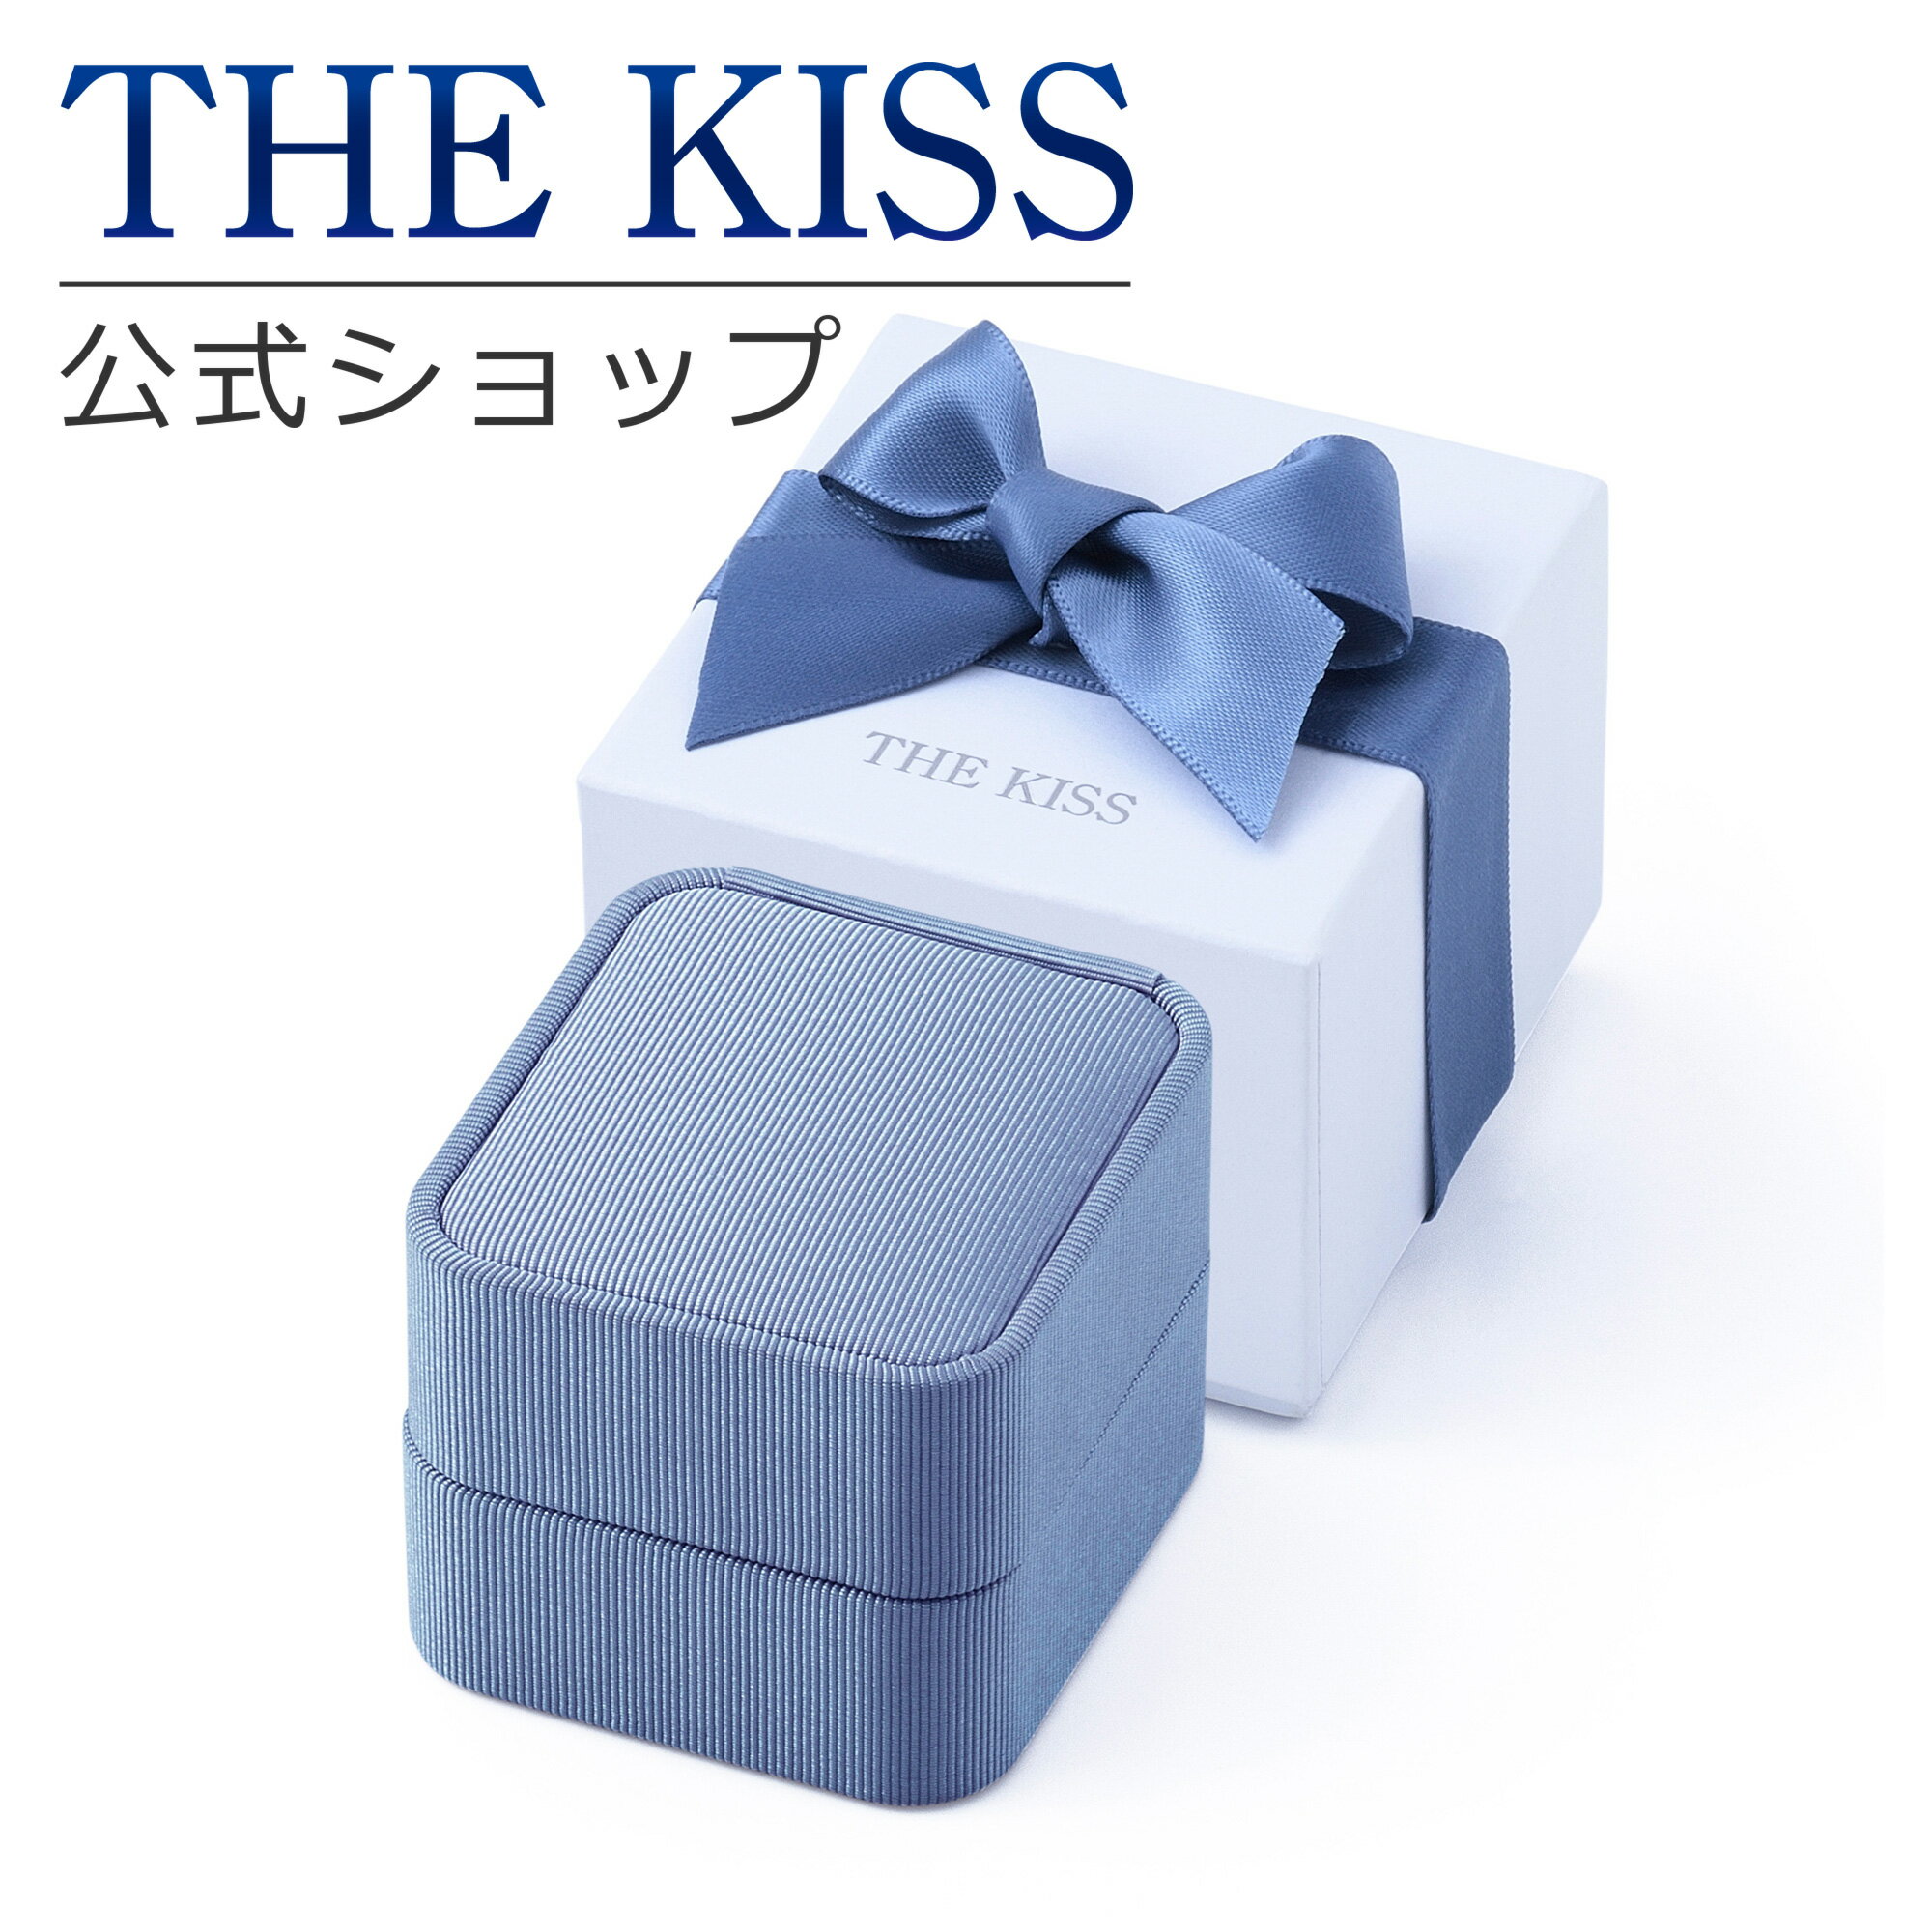 THE KISS 公式ショップ ブルースクエア ジュエリーボックス ジュエリーブランド THEKISS ジュエリー・アクセサリー用品 ケース BOX-REGULAR09 ブライダル 誕生日 プレゼント【あす楽対応（土日祝除く）】